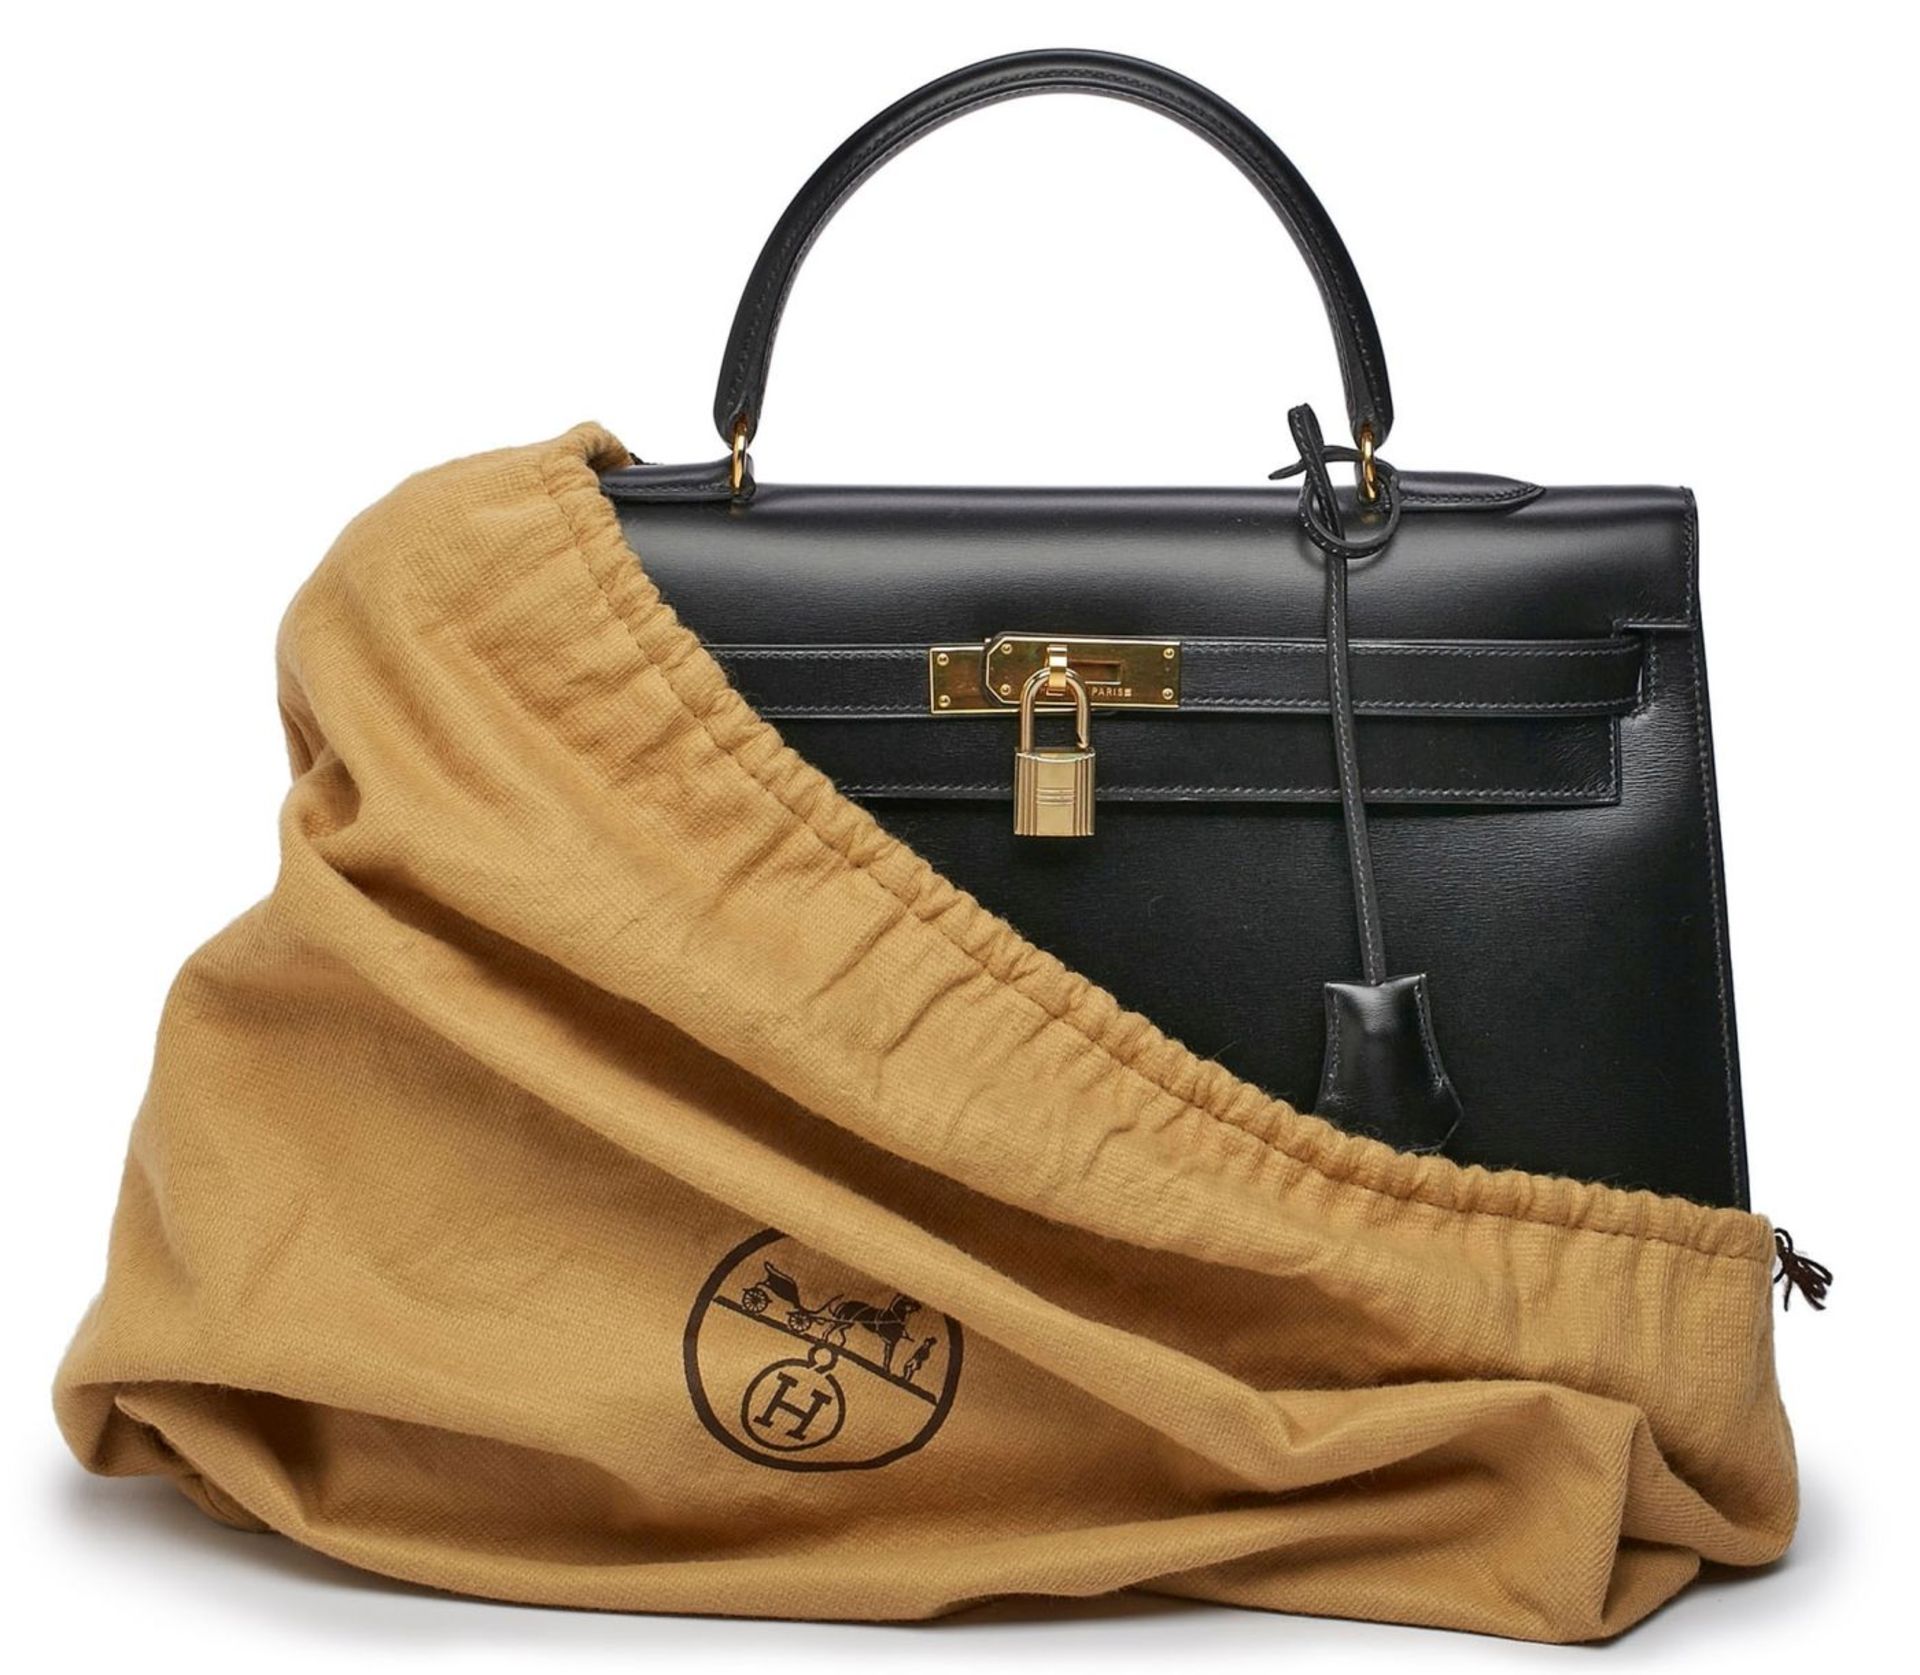 Handtasche "Kelly Bag", Hermès 1992. - Bild 2 aus 7